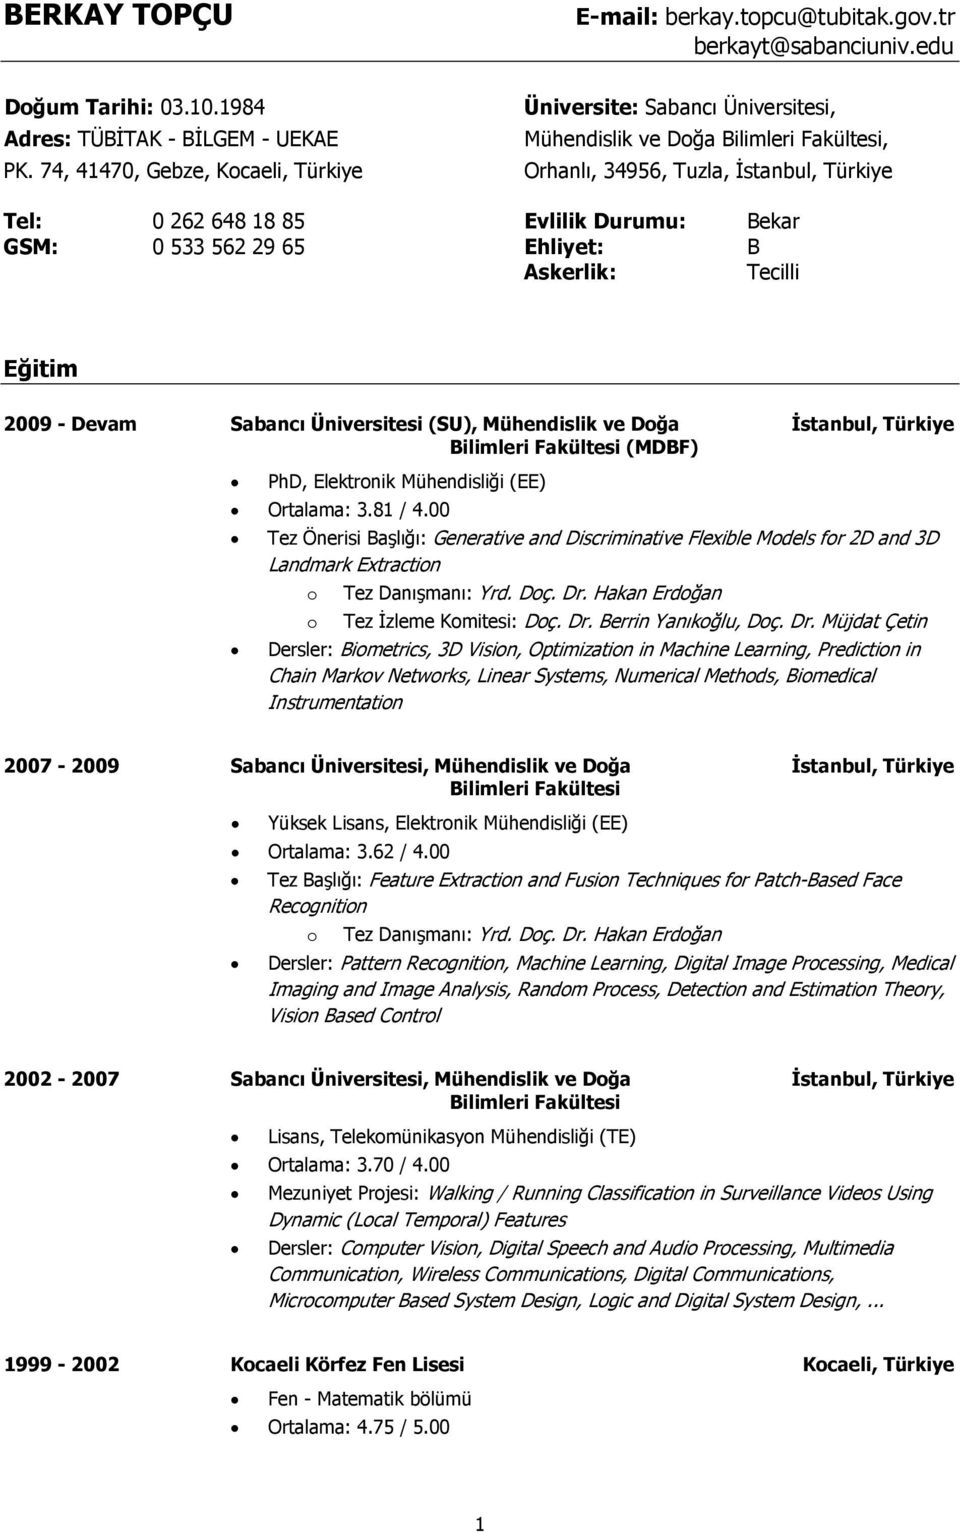 Askerlik: Tecilli Eğitim 2009 - Devam Sabancı Üniversitesi (SU), Mühendislik ve Dğa Đstanbul, Türkiye Bilimleri Fakültesi (MDBF) PhD, Elektrnik Mühendisliği (EE) Ortalama: 3.81 / 4.